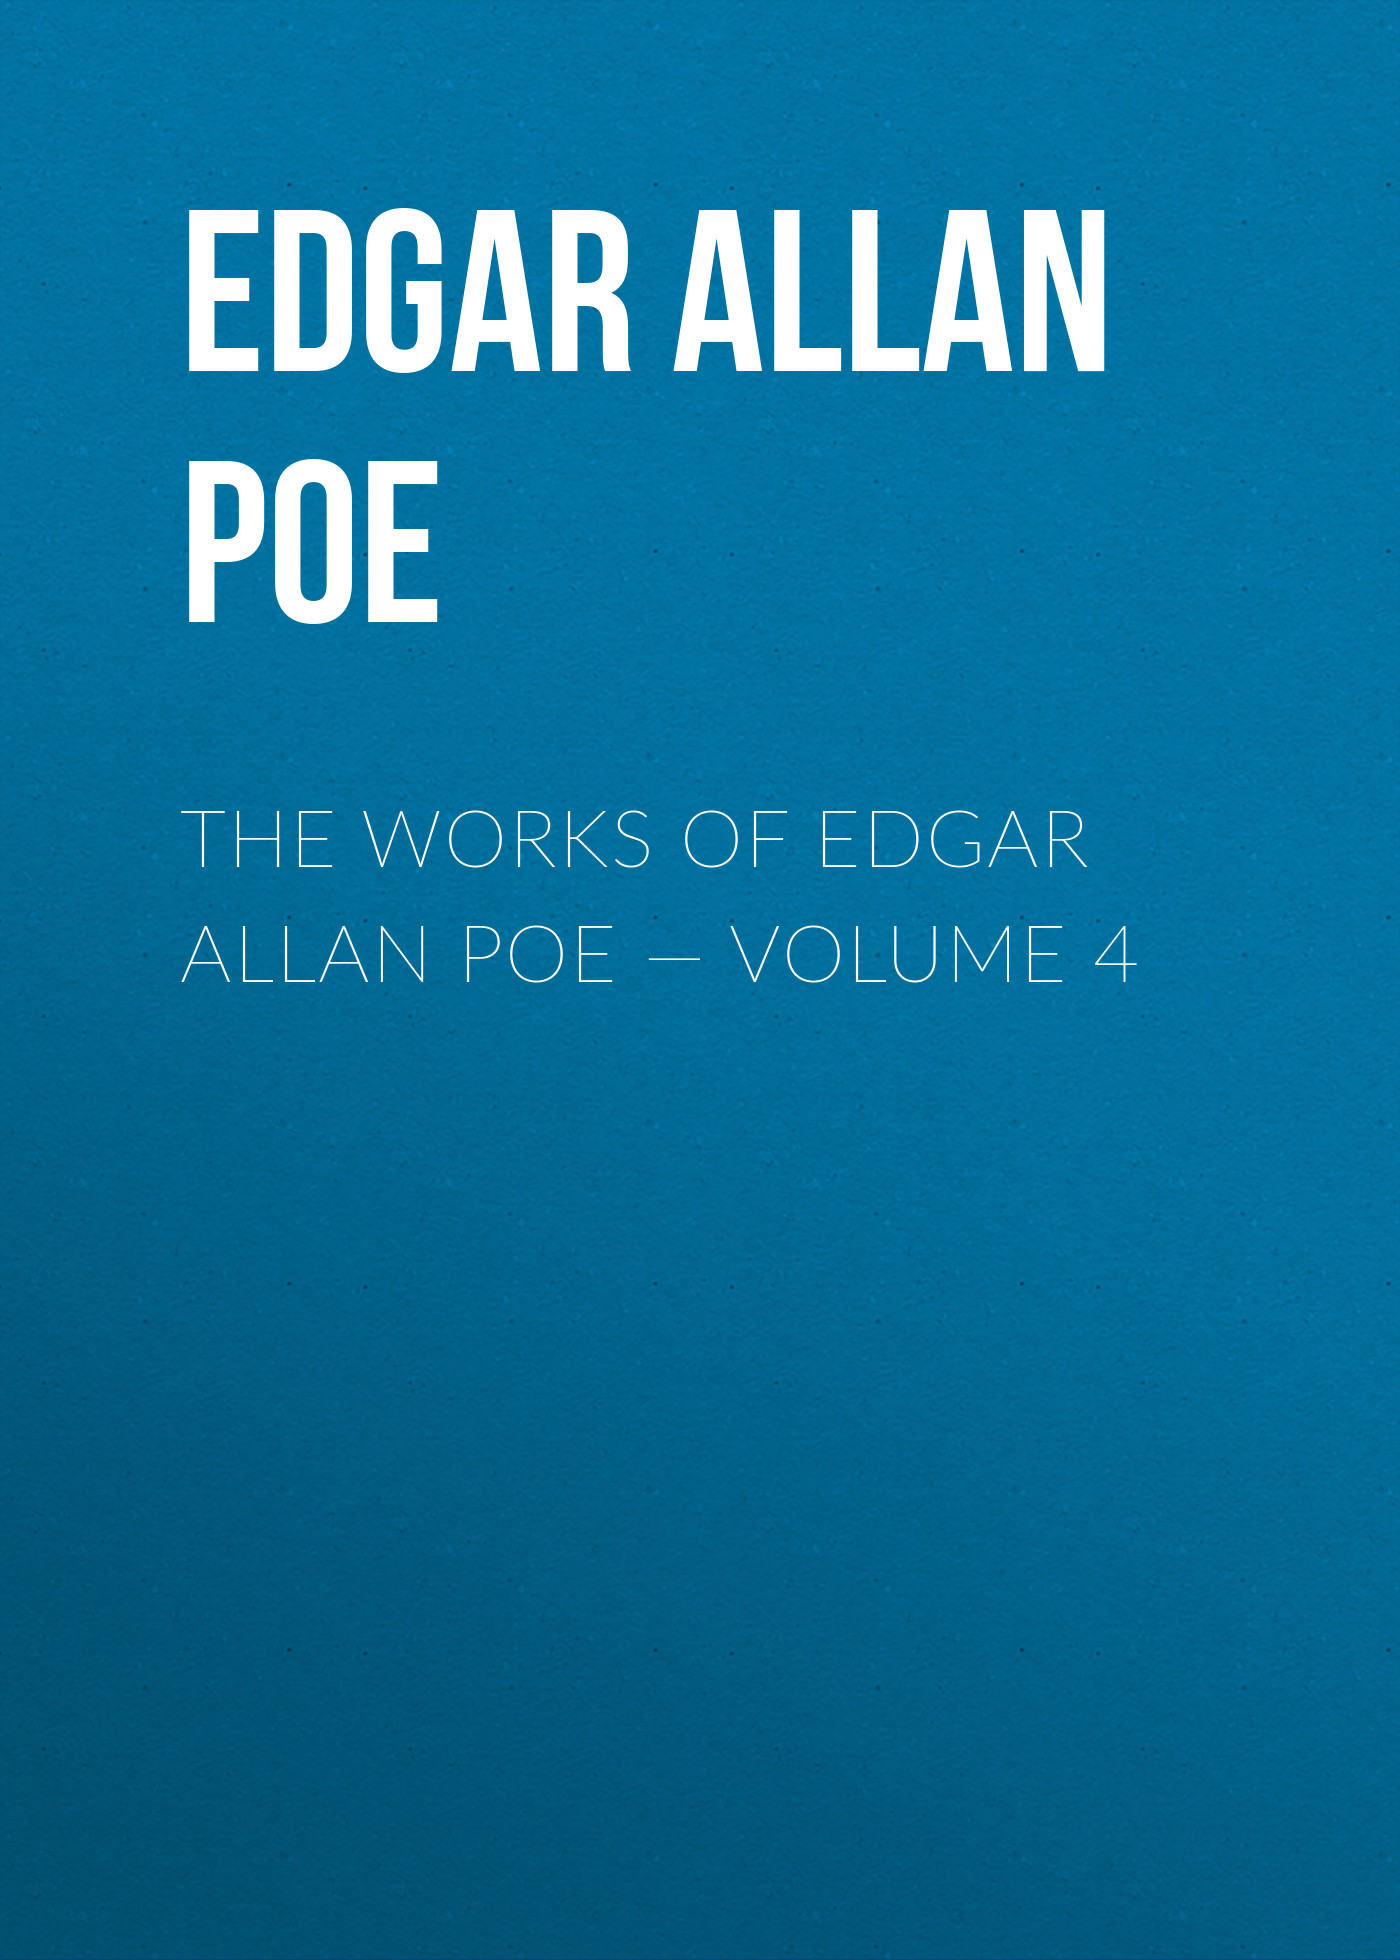 Книга The Works of Edgar Allan Poe – Volume 4 из серии , созданная Edgar Poe, может относится к жанру Литература 19 века, Зарубежная старинная литература, Зарубежная классика. Стоимость электронной книги The Works of Edgar Allan Poe – Volume 4 с идентификатором 25291590 составляет 0 руб.